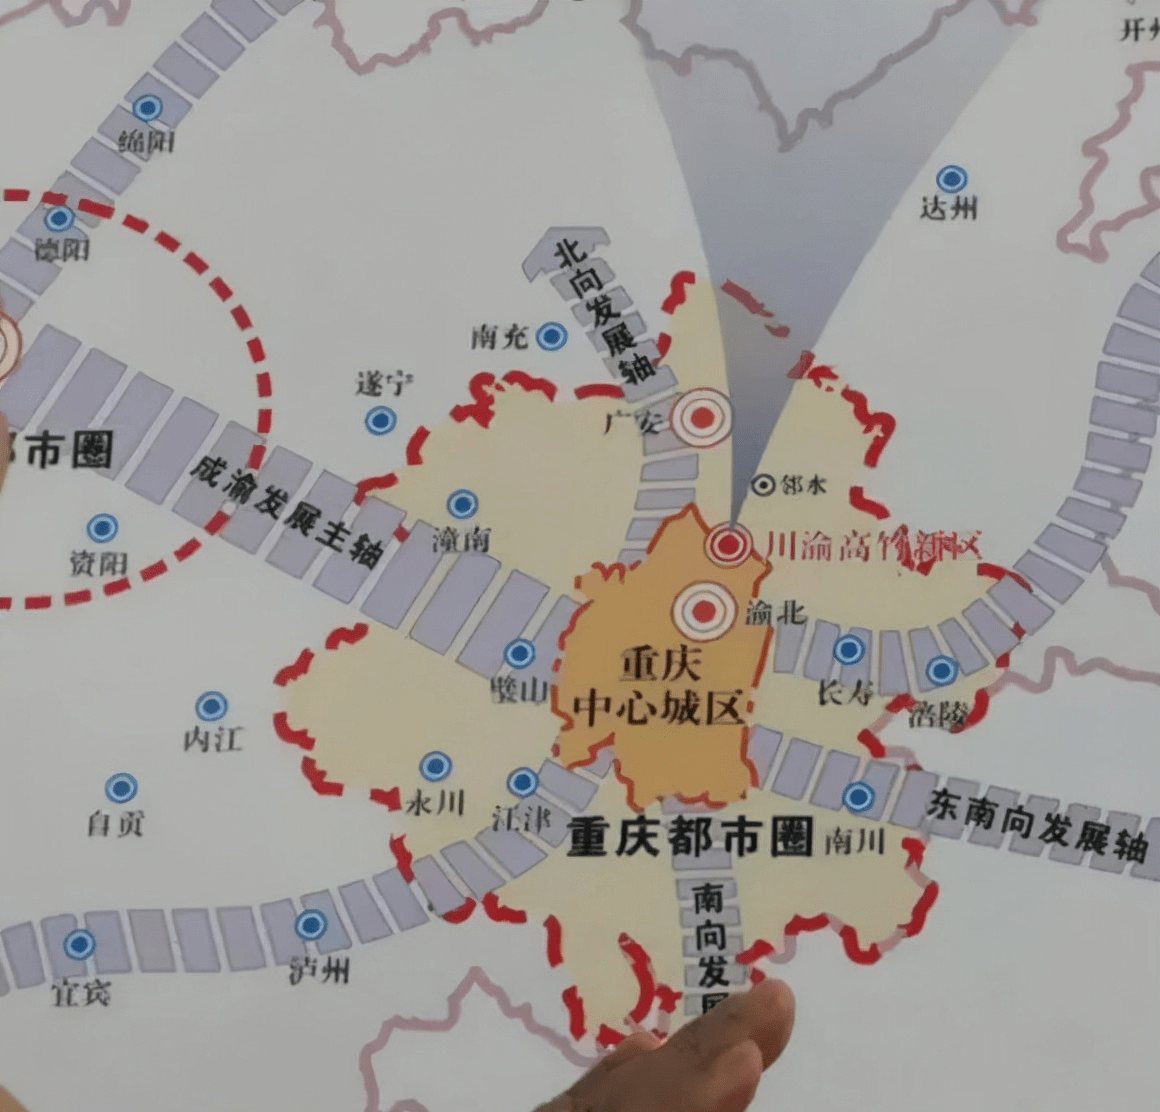 重庆都市圈跨省共融,助力成渝地区双城经济圈建设_发展